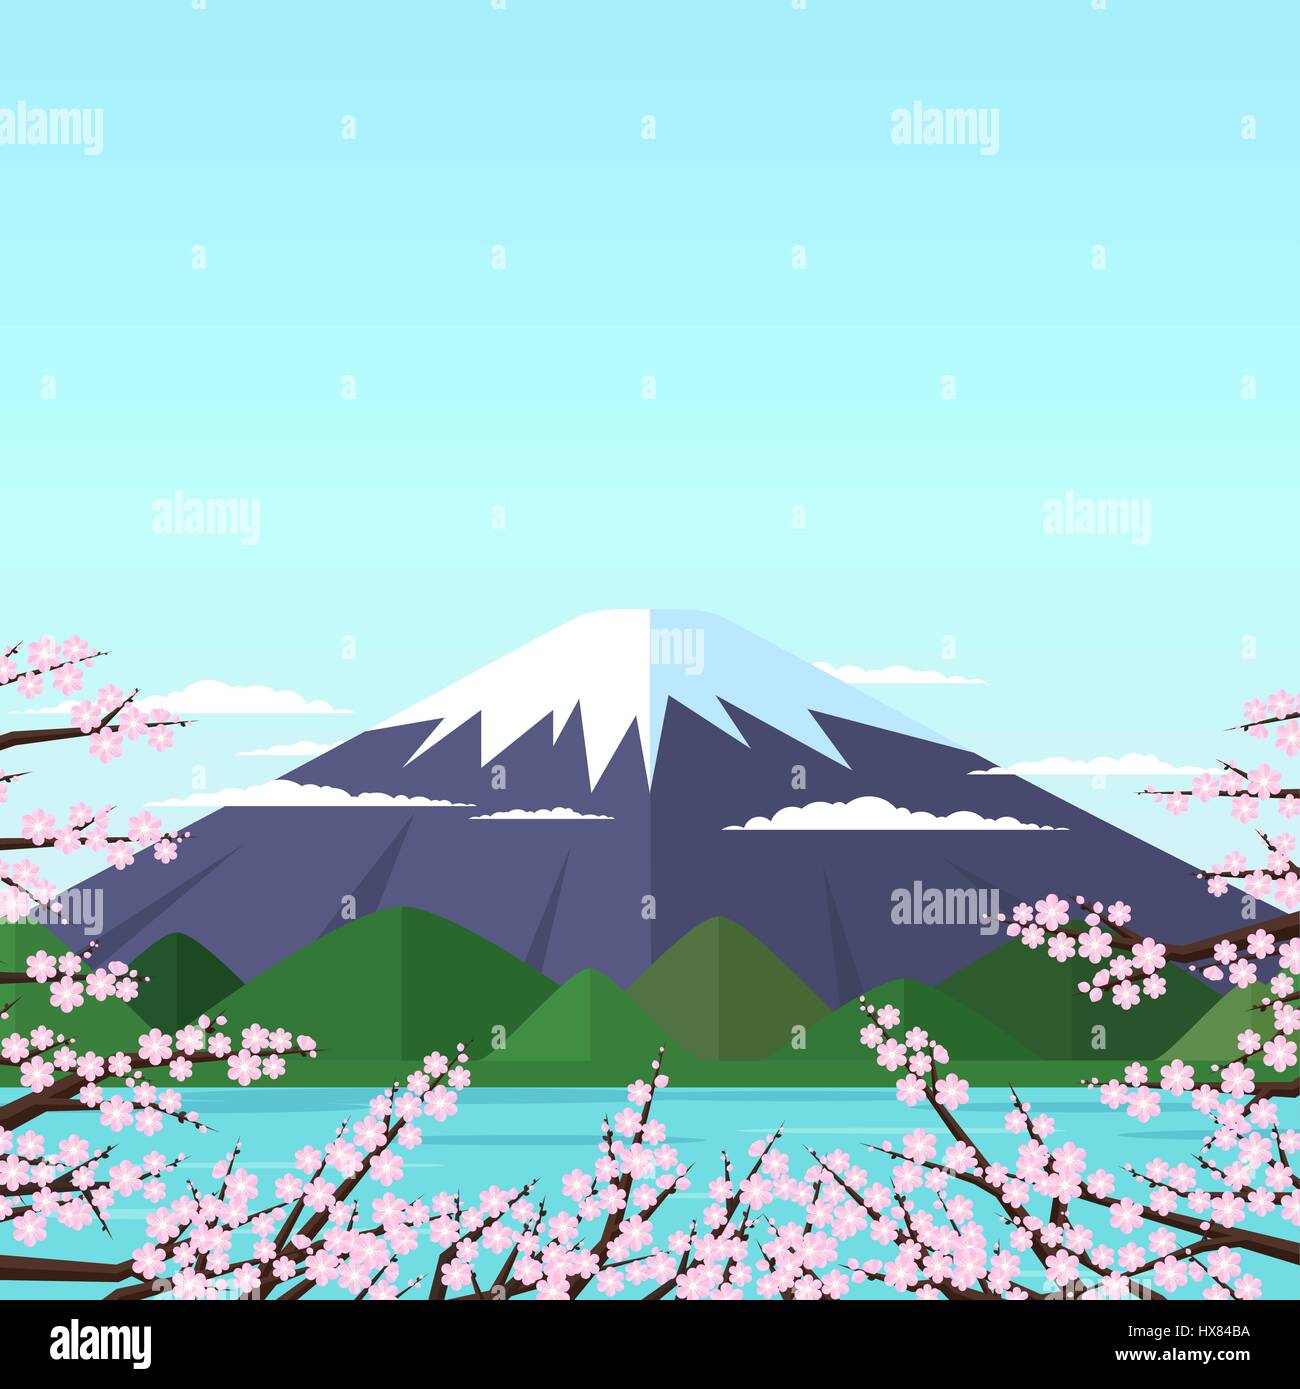 Berg am See, umgeben von blühenden Zweigen mit rosa Blumen auf blauem Hintergrund in einem flachen Stil. Sakura. Fuji. Vektor-illustration Stock Vektor